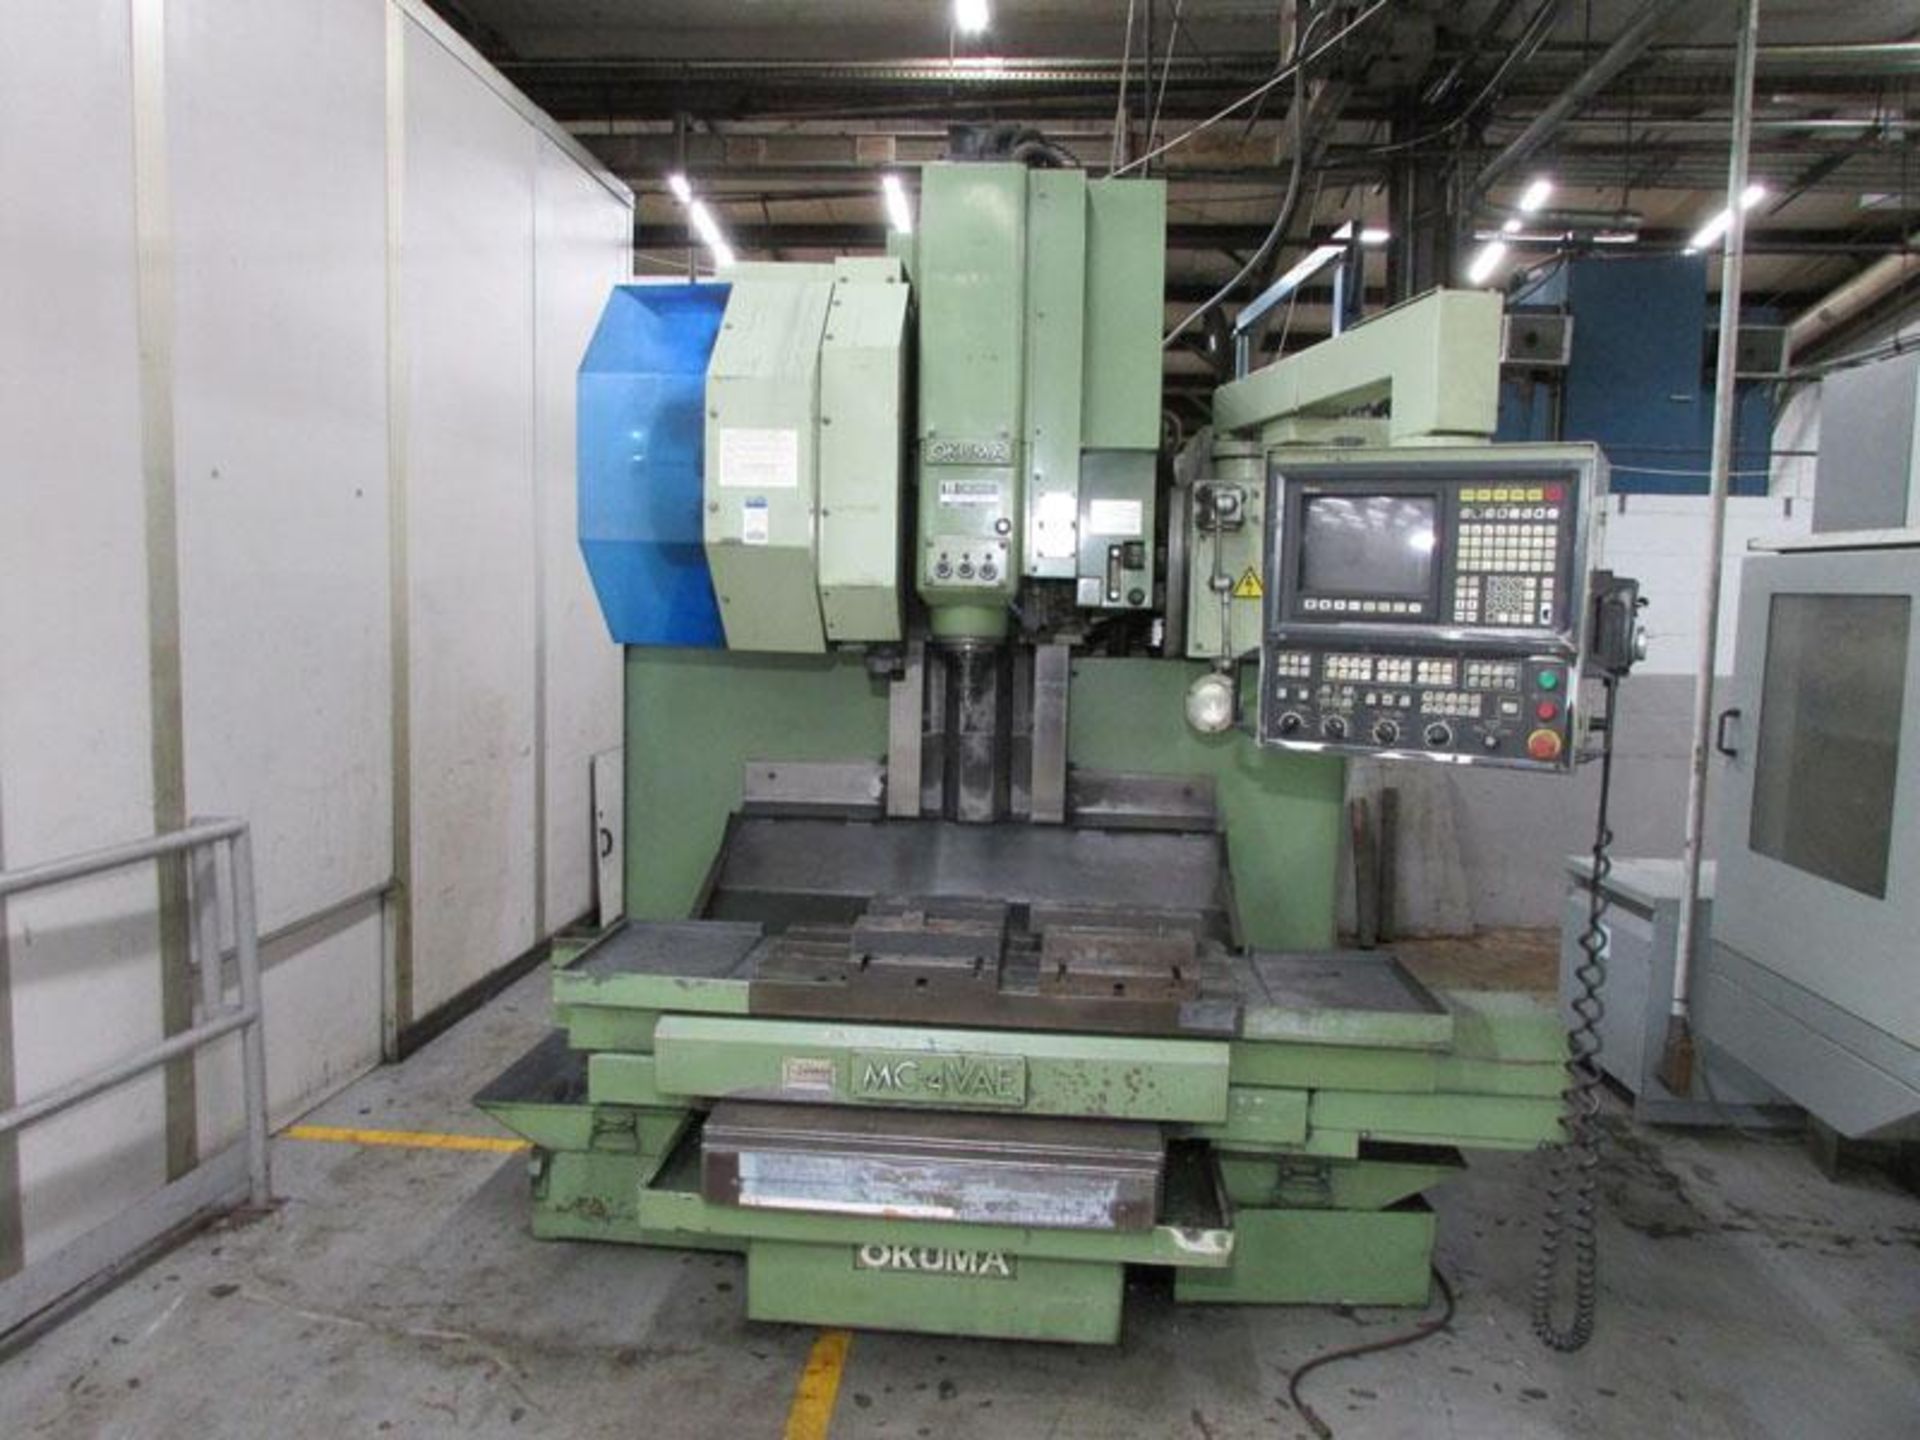 Okuma MC-4VAE Vertical CNC Milling Machine - Image 2 of 13